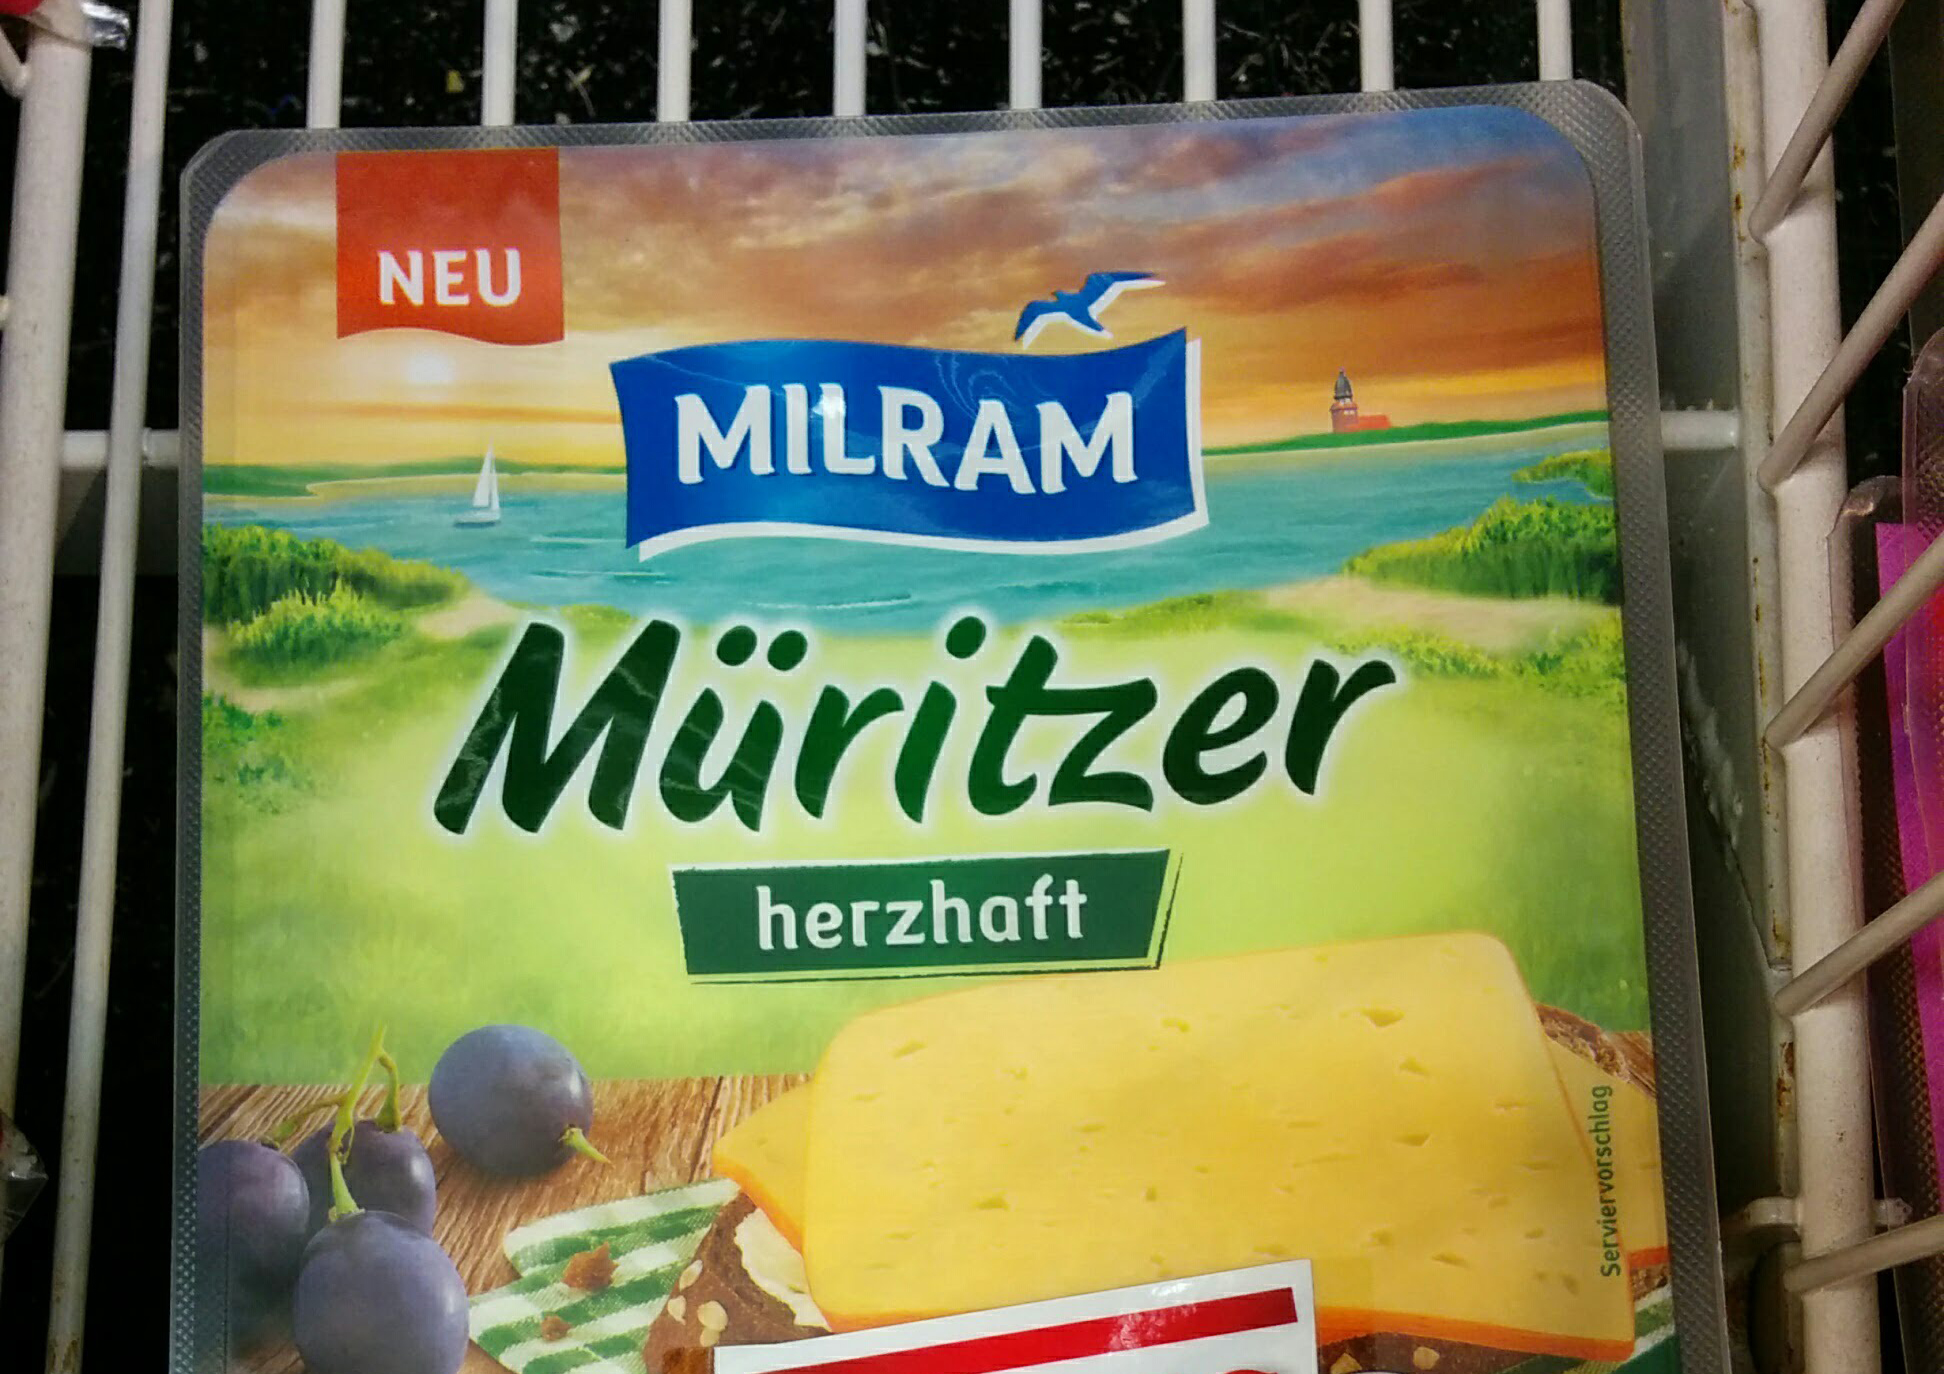 Milram Käse kaufen und gratis Frischebox von Koziol erhalten